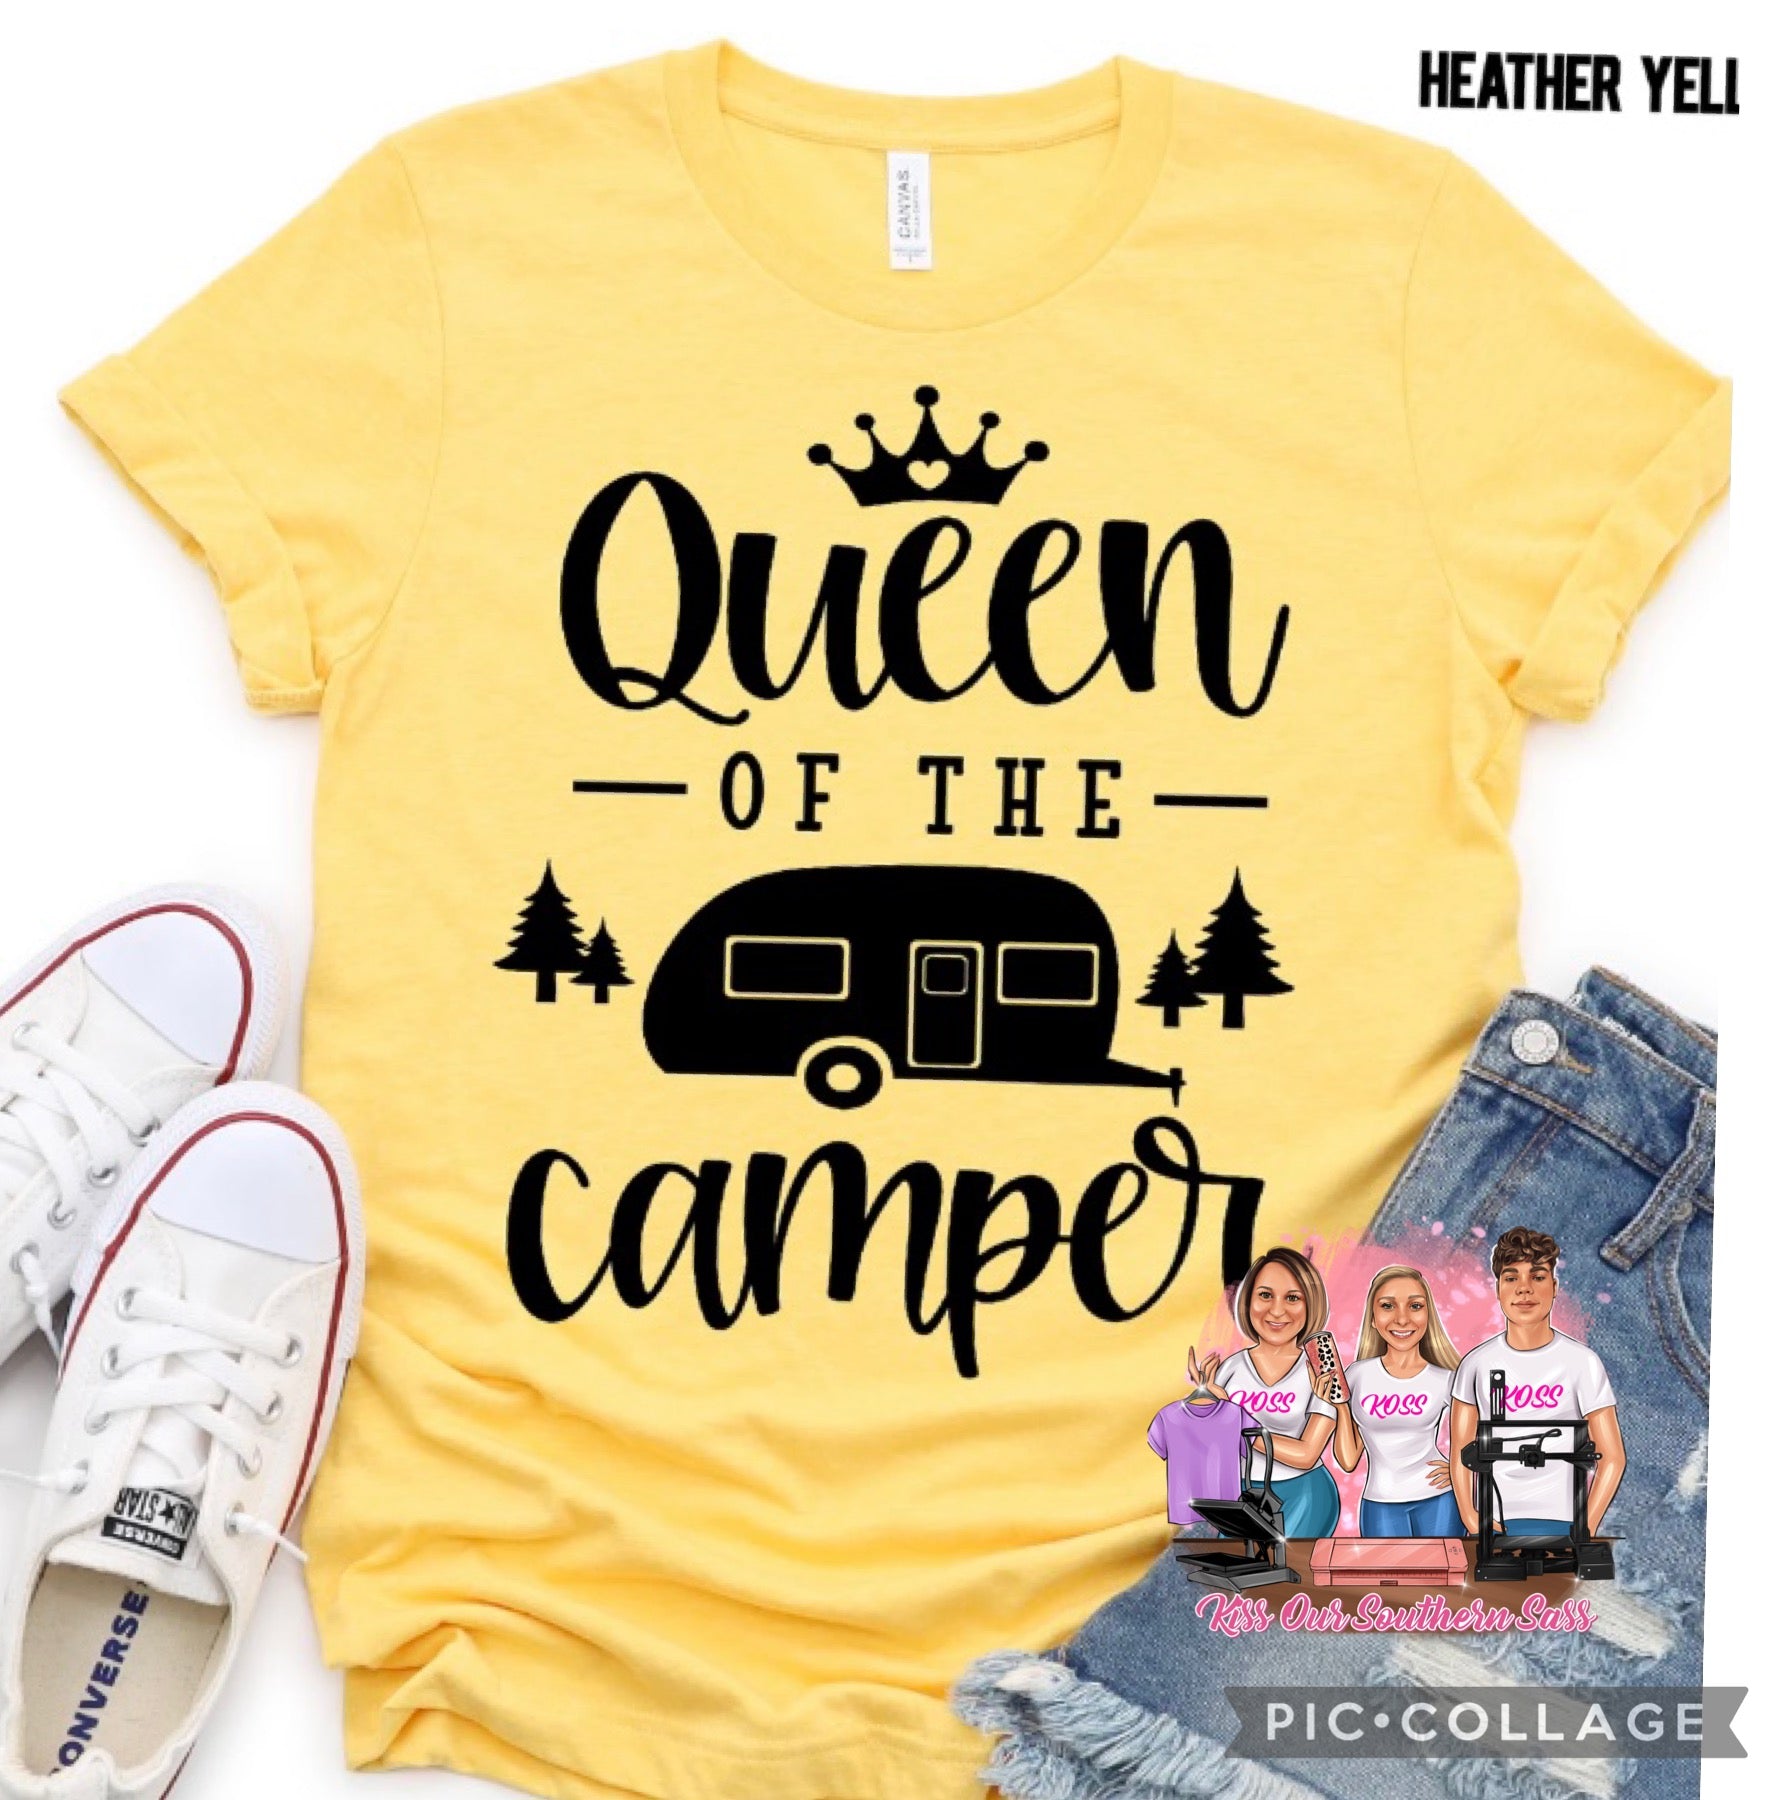 Queen of the Camper